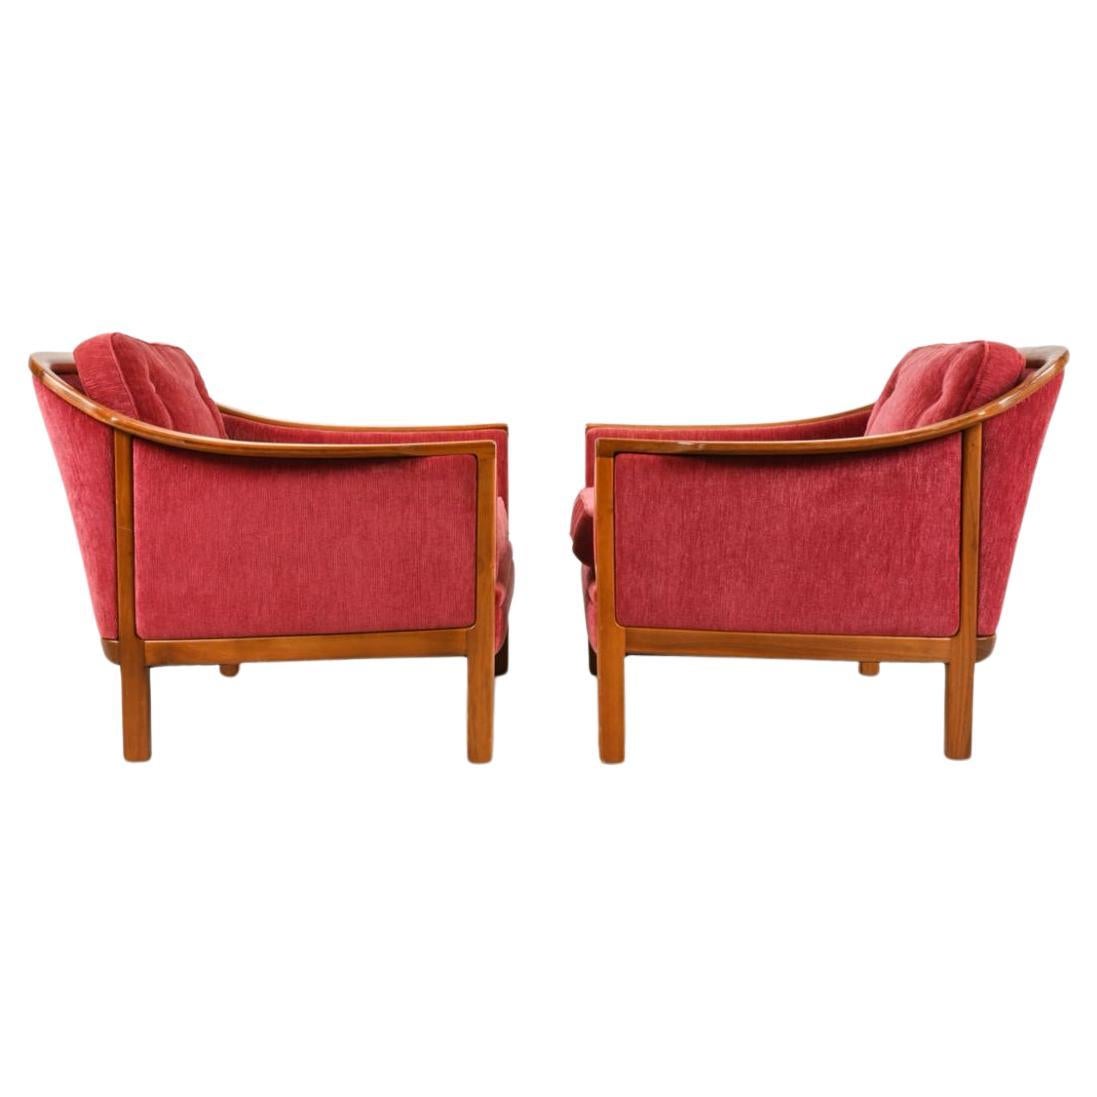 Paire de belles chaises de salon avec cadre en teck sculpté et revêtement en chenille. Superbes chaises longues basses au design scandinave. Fabriqué en Suède vers 1960. Situé à Brooklyn NYC.

Dimensions : H 28